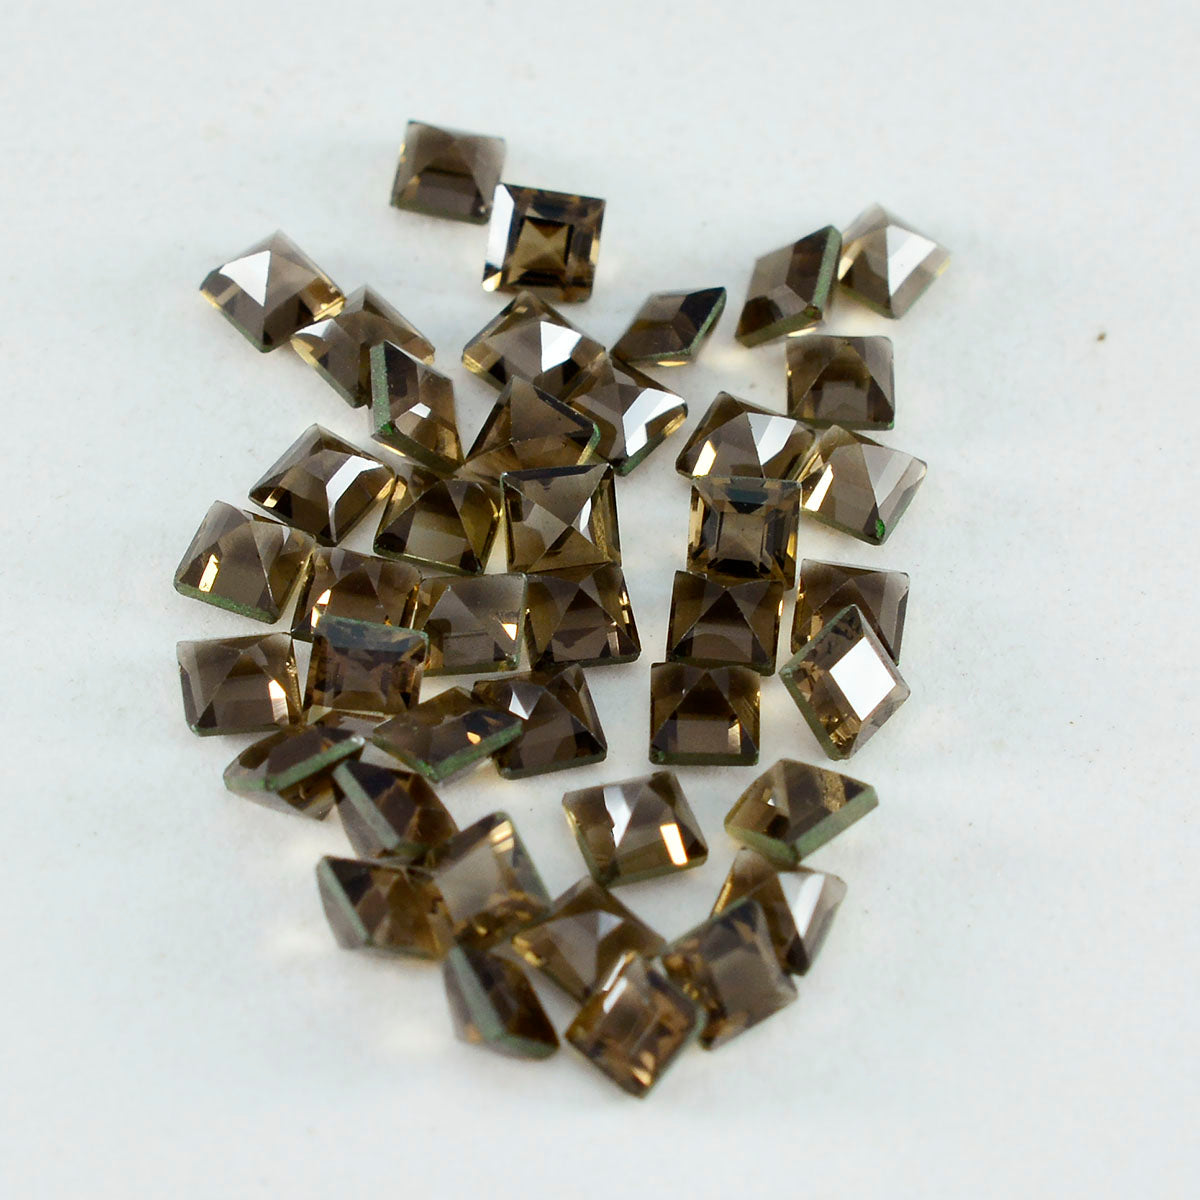 riyogems 1 шт. натуральный коричневый дымчатый кварц ограненный 3x3 мм квадратной формы красивый качественный камень